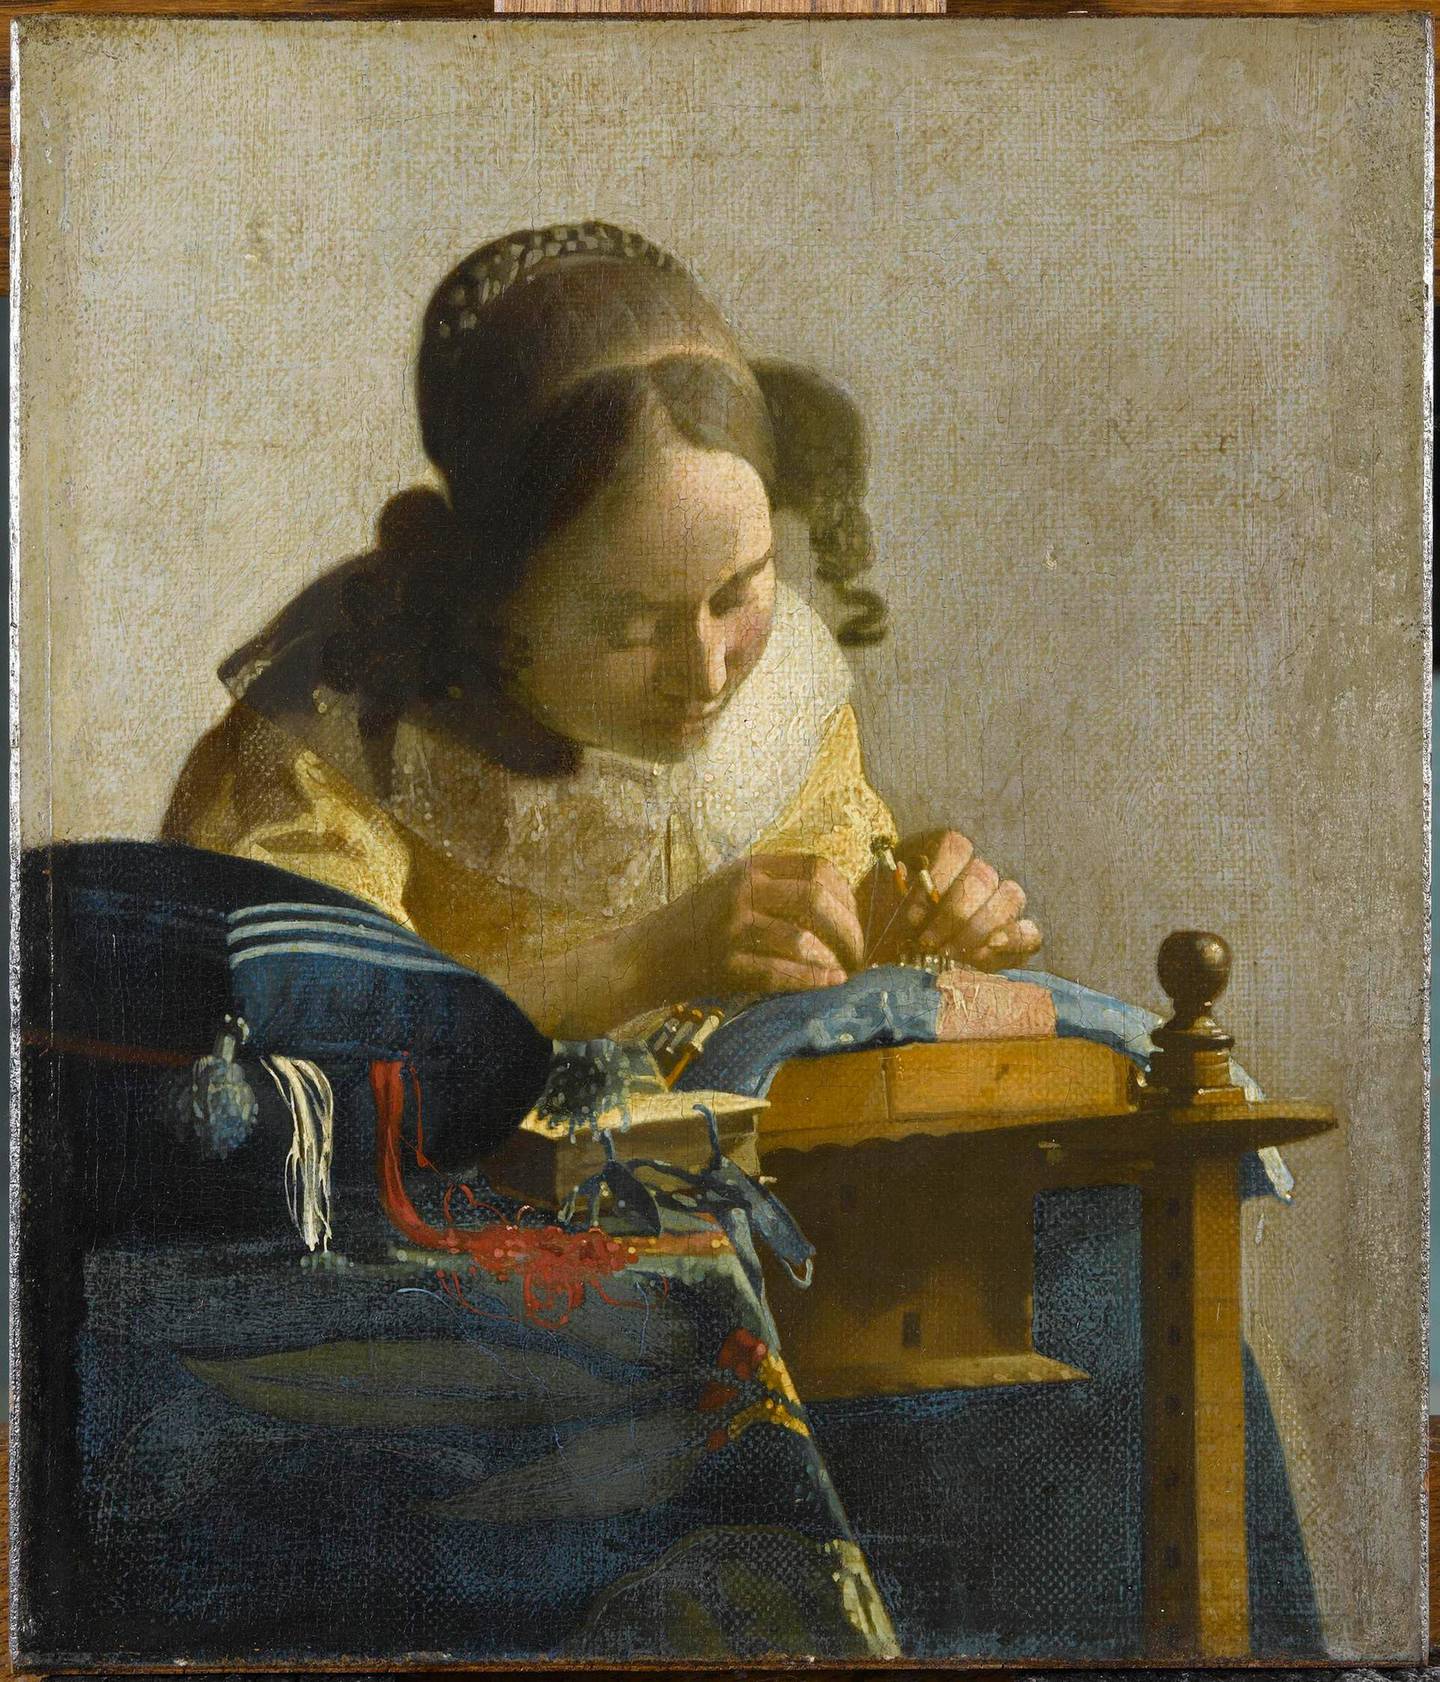 Johannes Vermeer (1632-1675), The Lacemakerca. 1669-70, Oil on canvas mounted on panel, Paris, Musée du Louvre©RMN-Grand Palais (musée du Louvre)/Gérard Blot